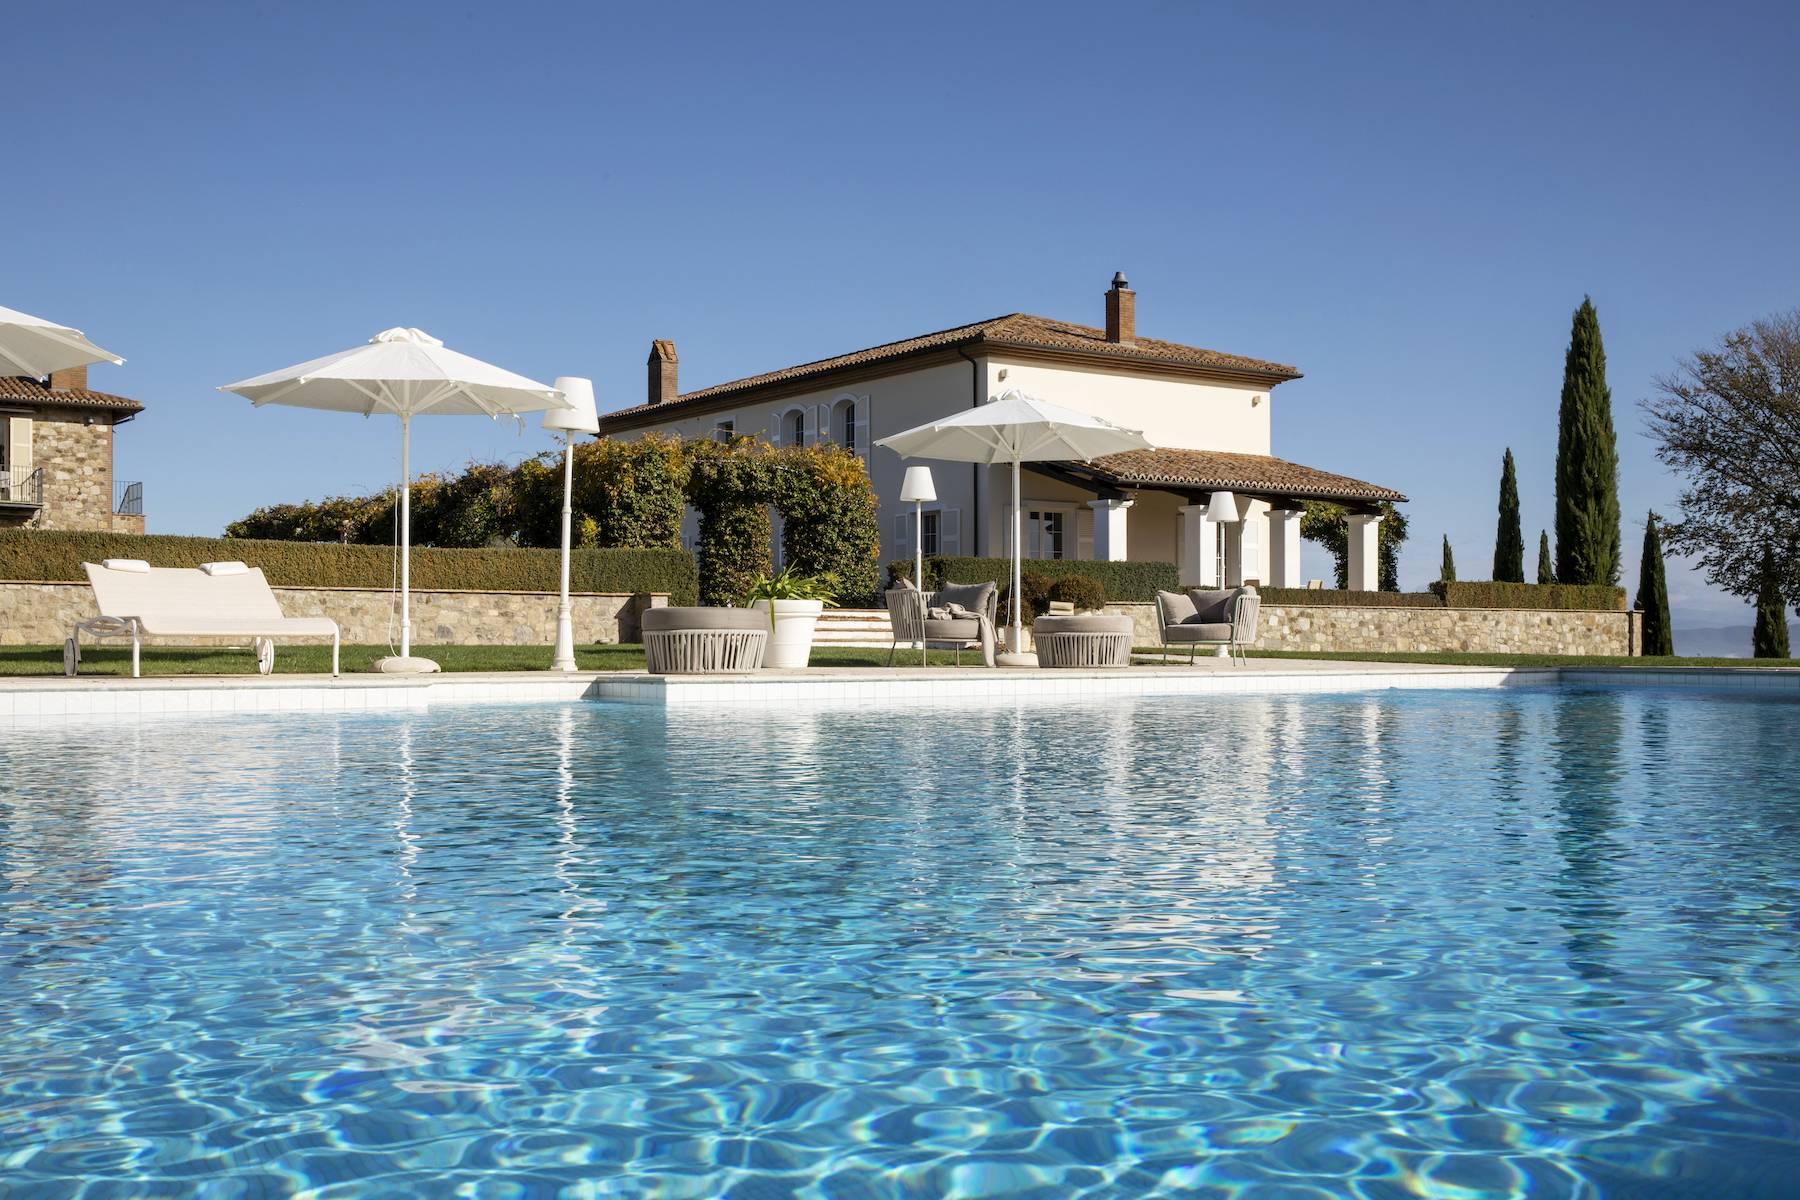 Dreamy villa hidden among the Umbrian hills - 1